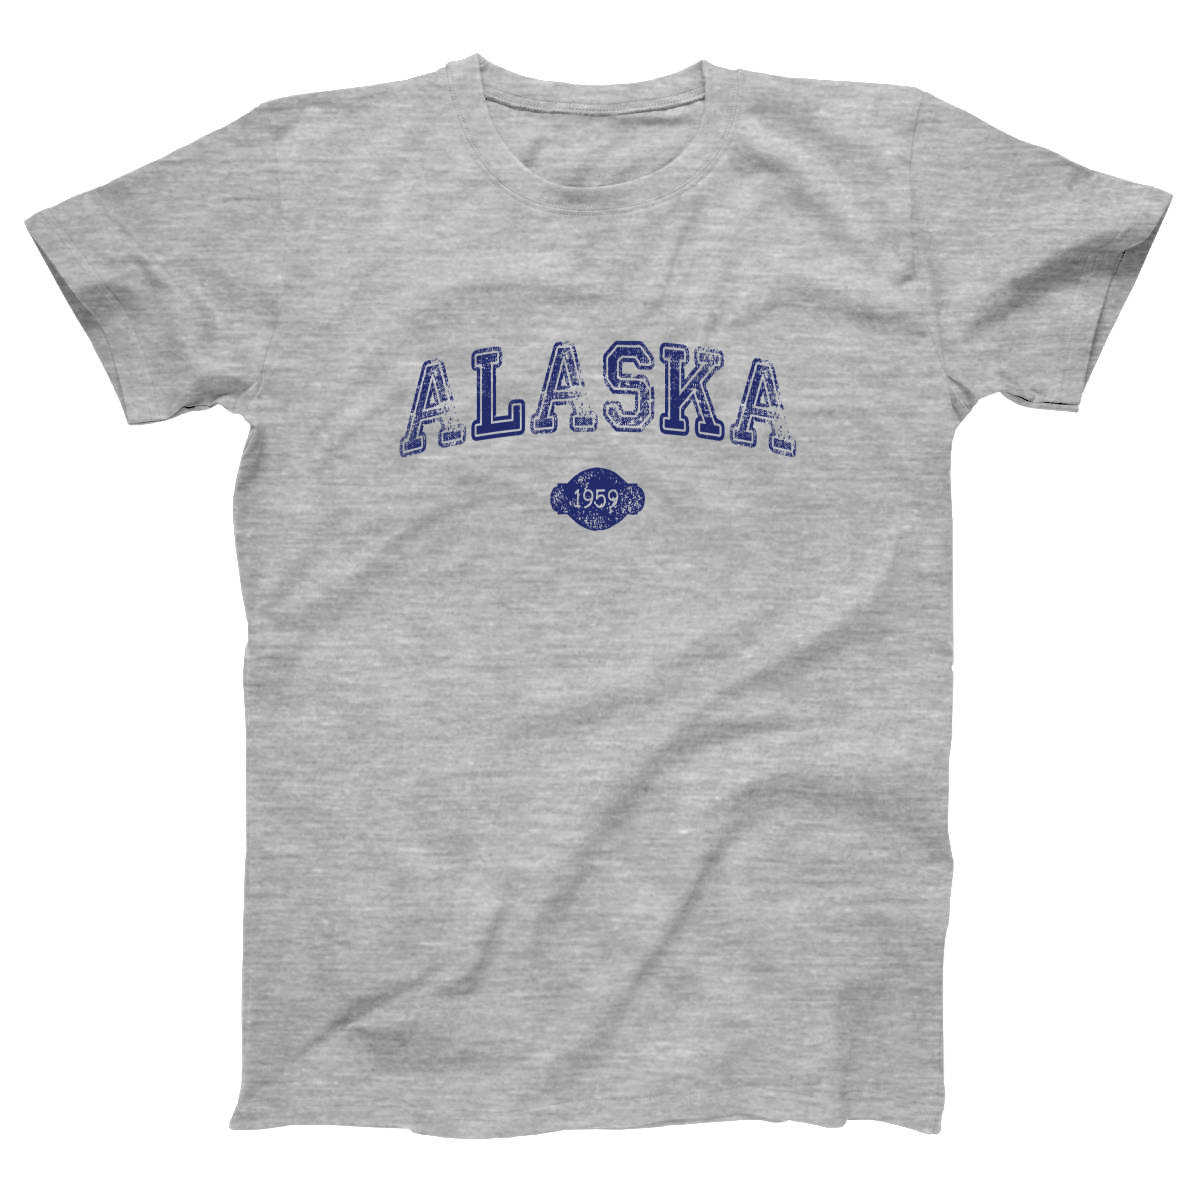 Alaska 1959 Women's T-shirt